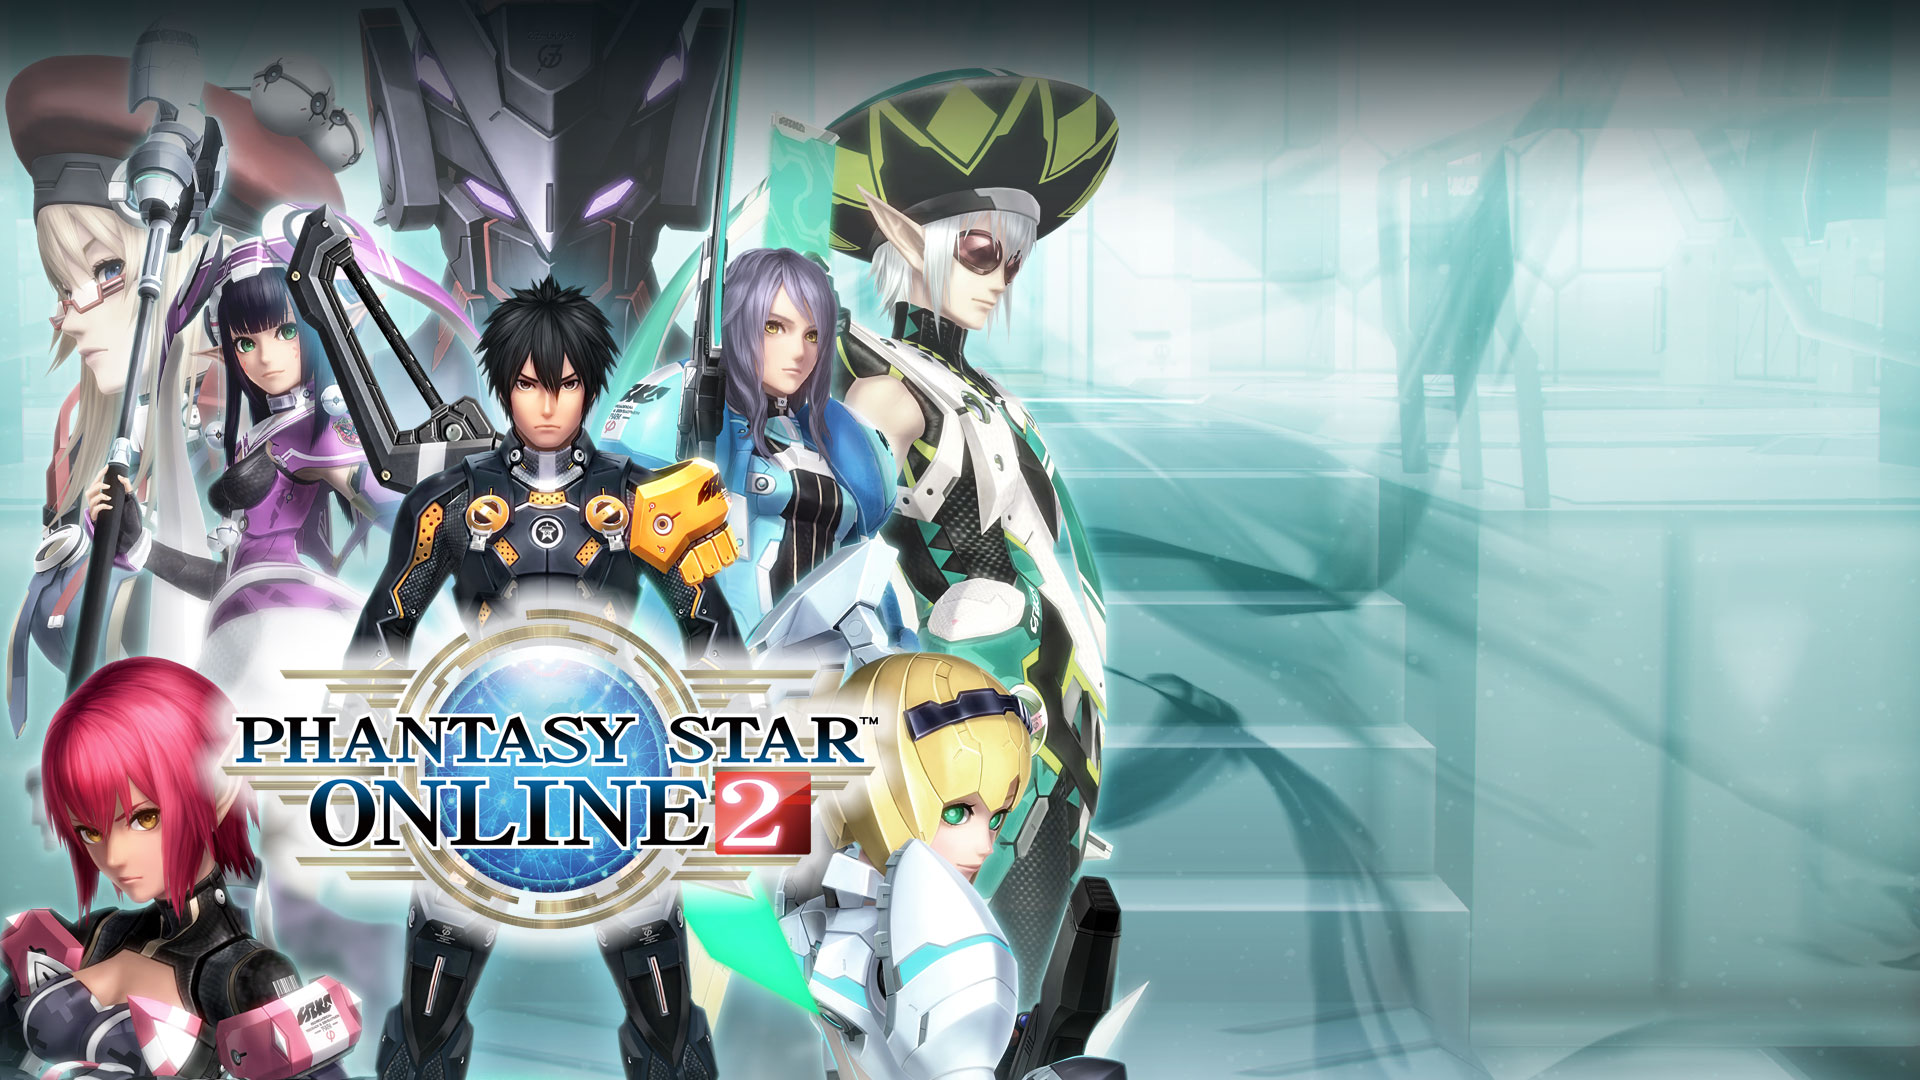 Phantasy Star Online 2, eine Collage von Charakteren aus dem Spiel.